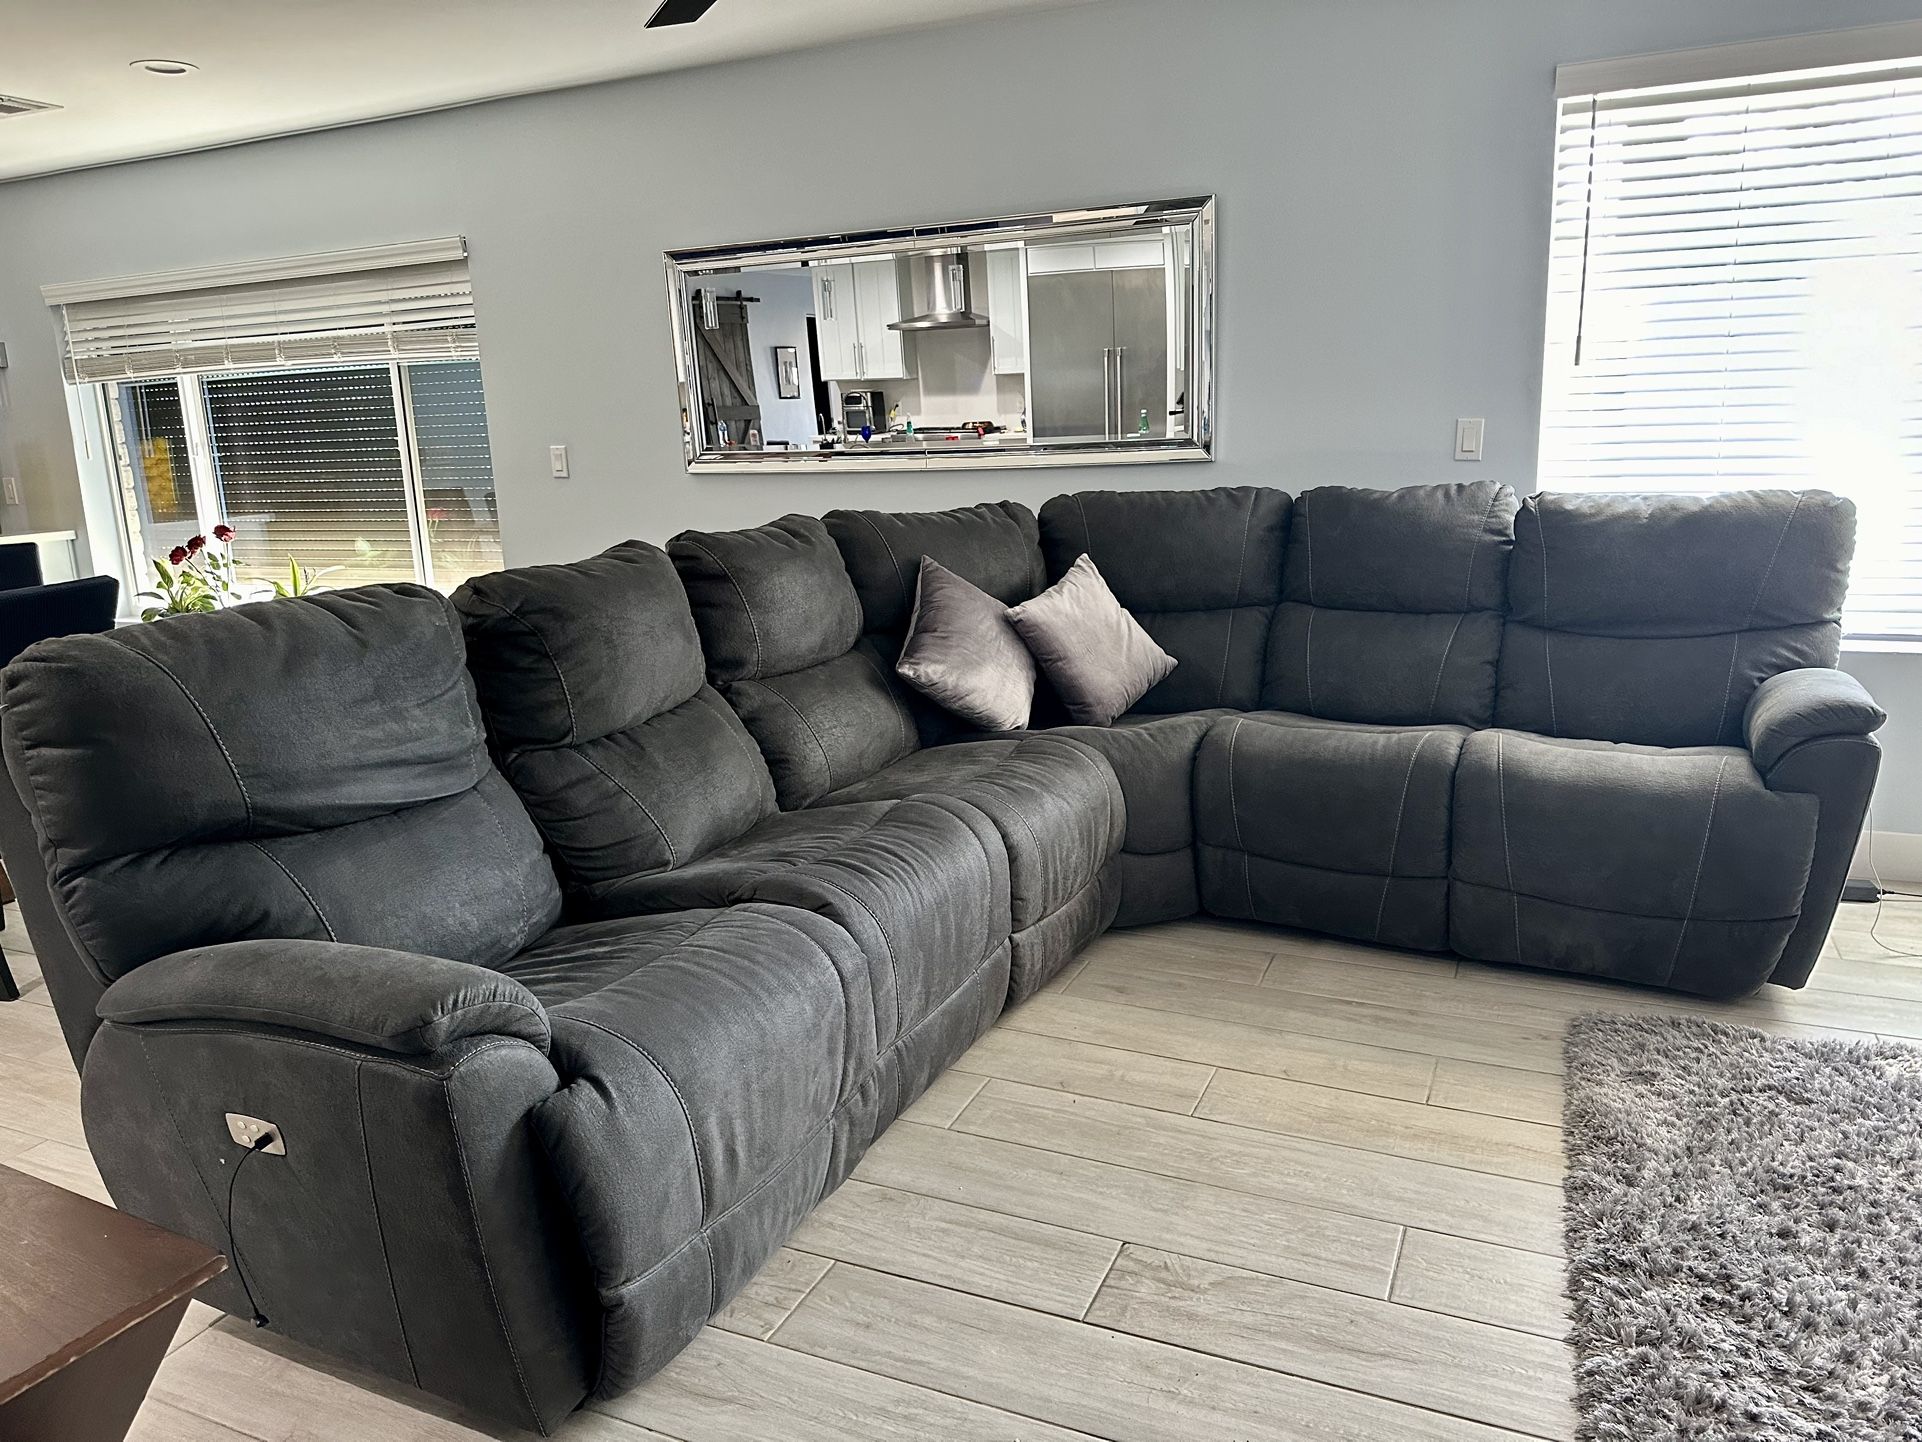 La-Z-Boy Trouper Sectional Couch Condition: Excellent 